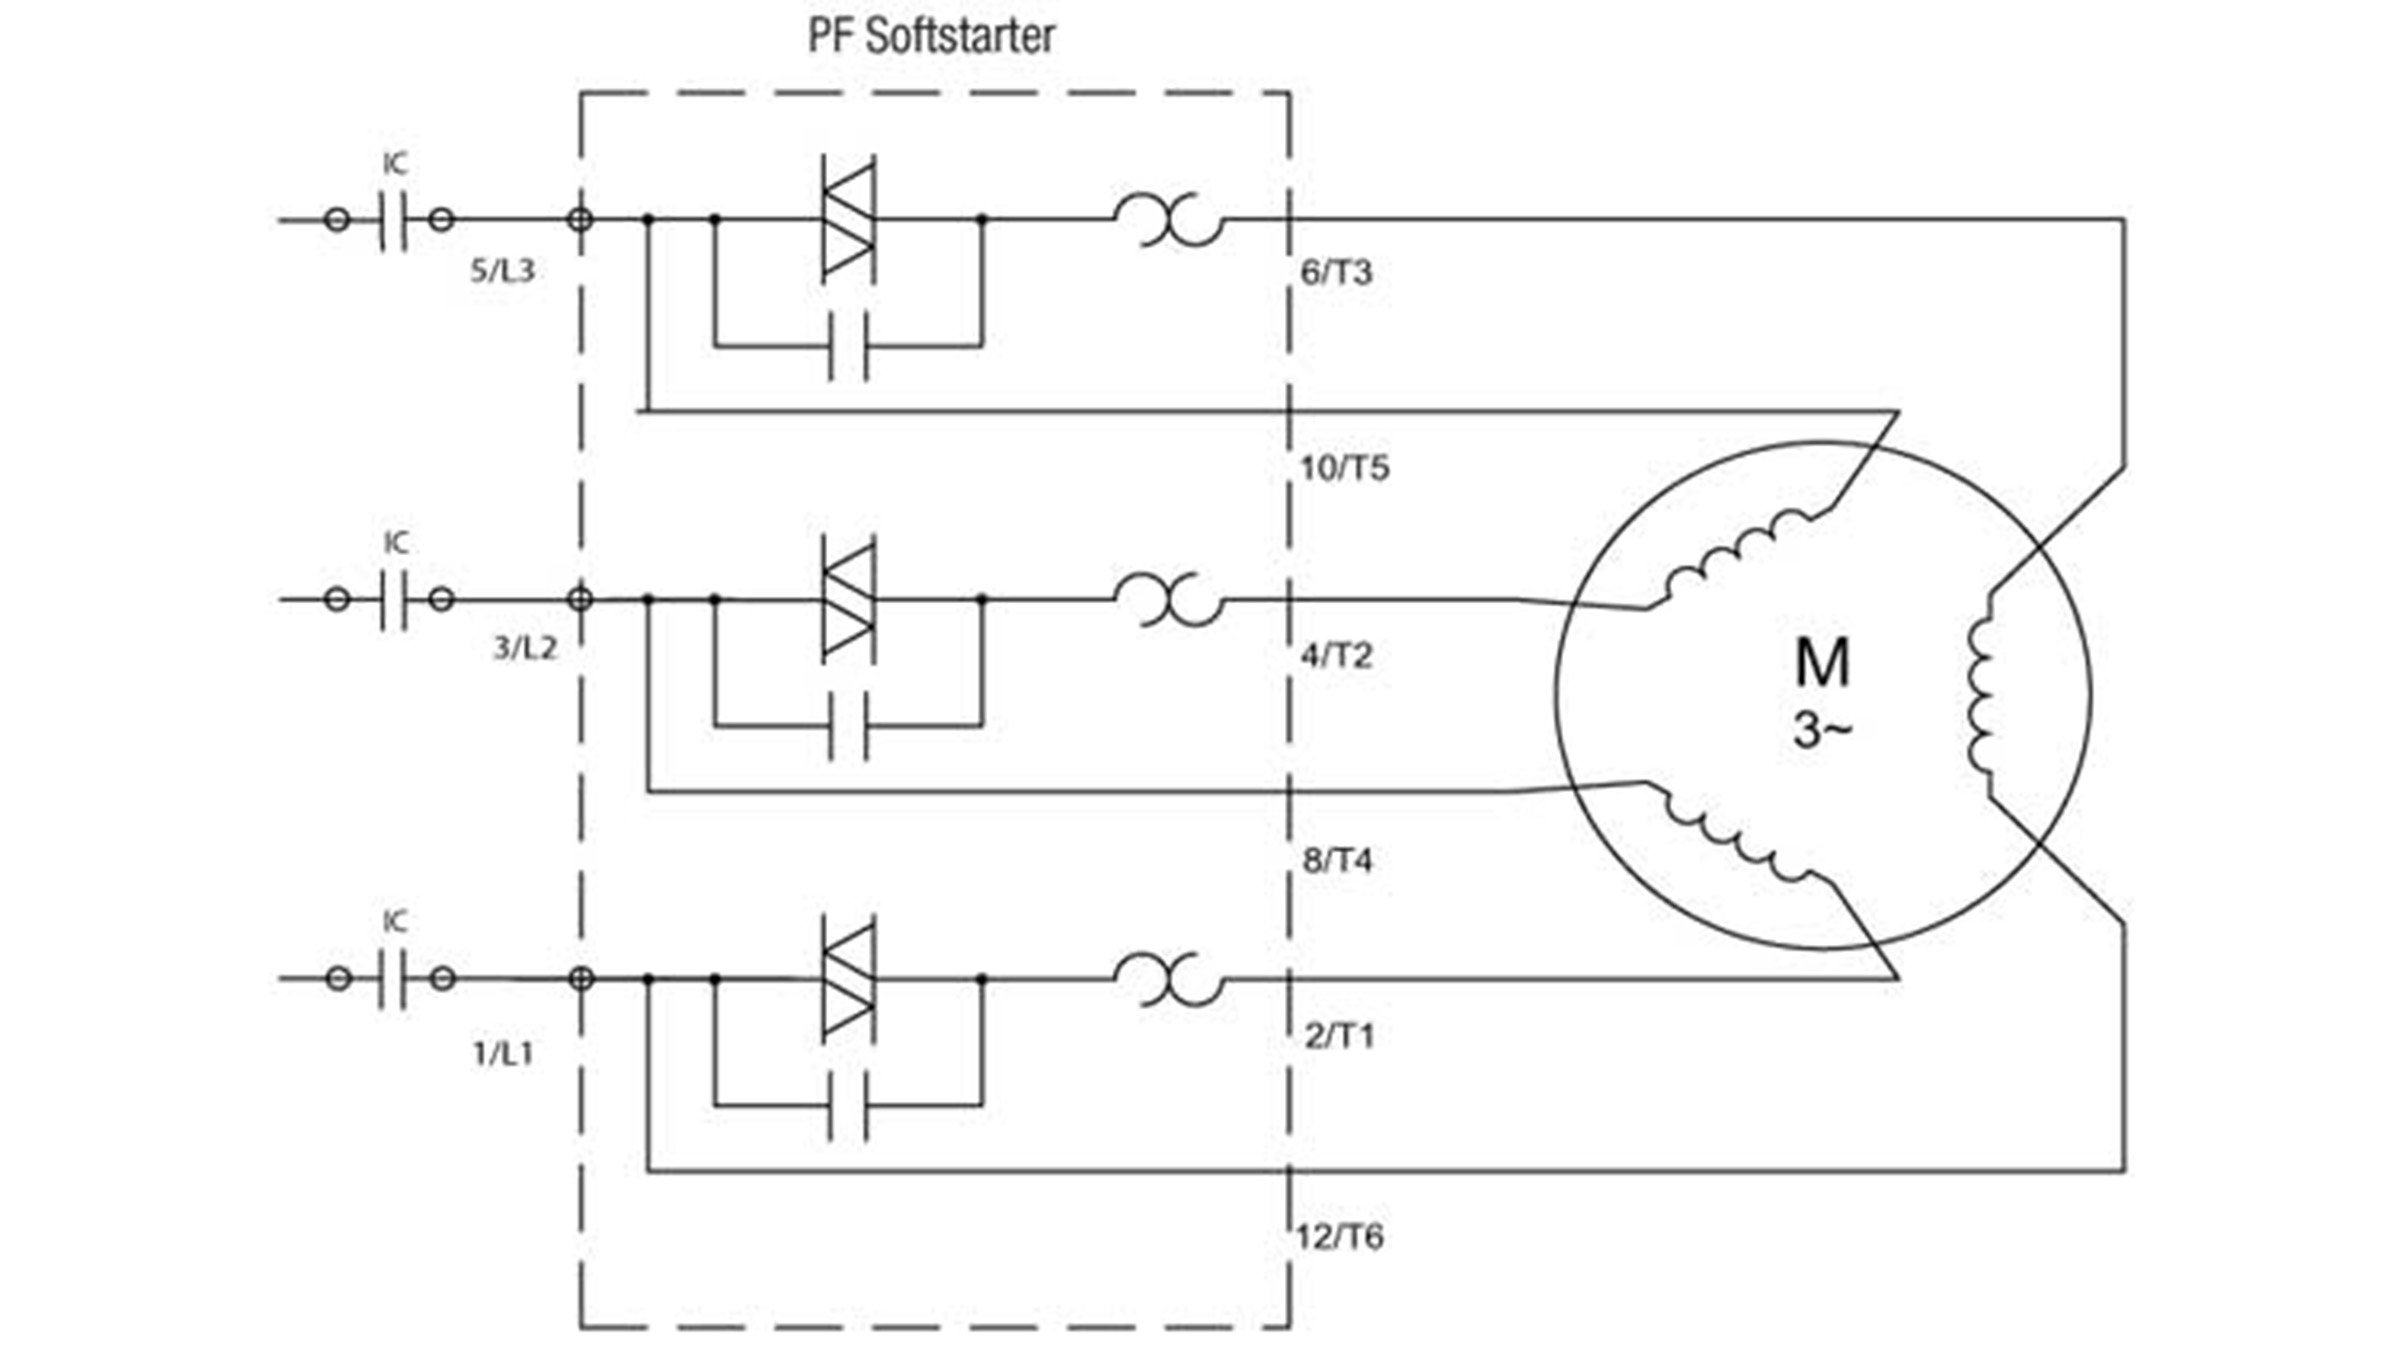 Sprecher & Schuh Series PFS Softstarter Delta connected wiring diagram